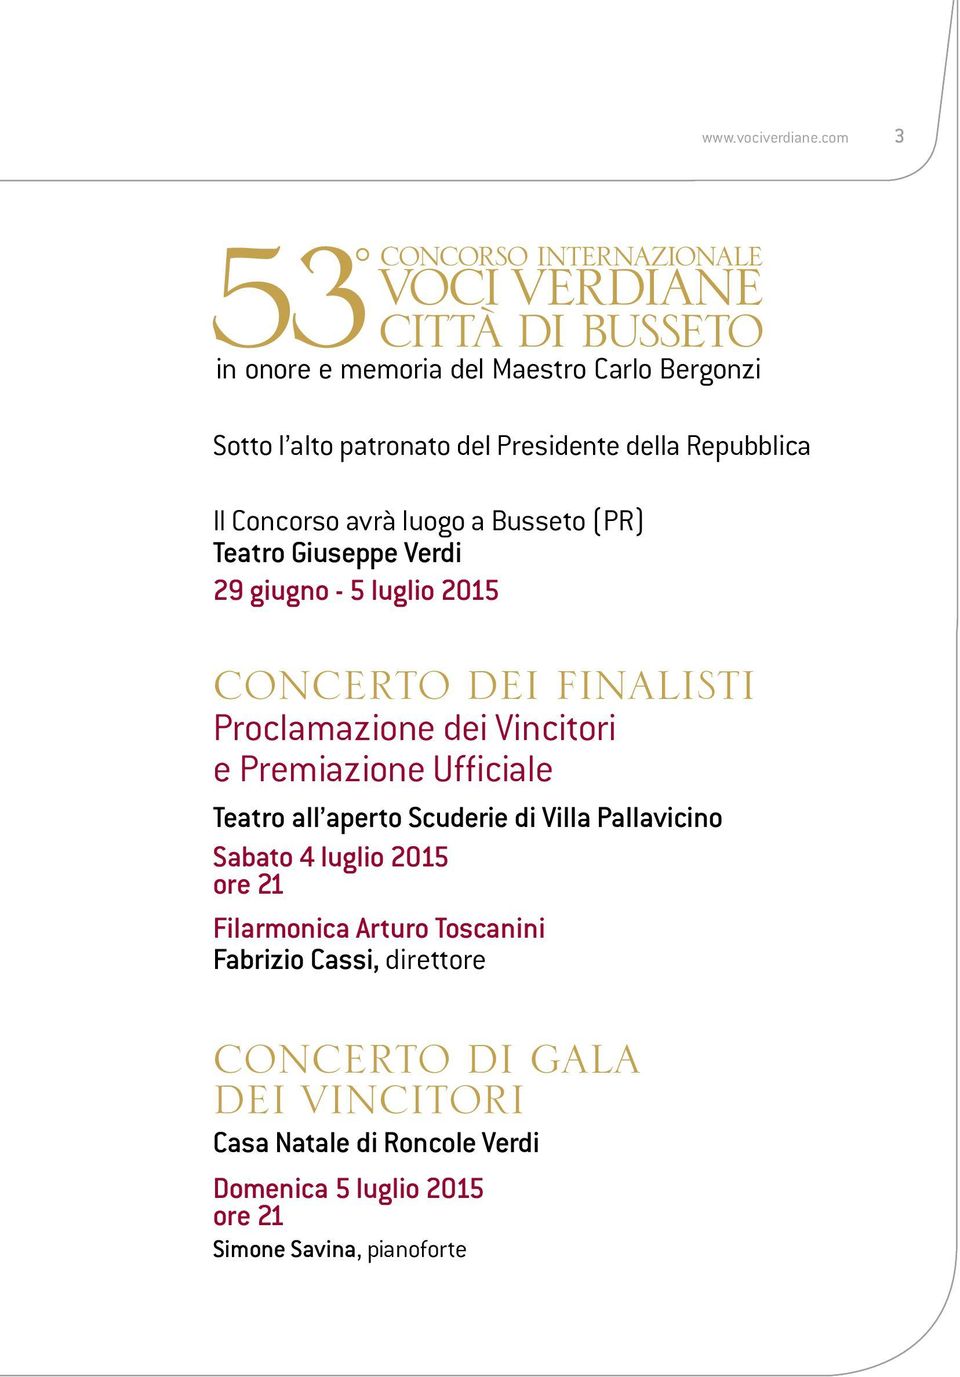 Busseto (PR) Teatro Giuseppe Verdi 29 giugno - 5 luglio 2015 CONCERTO DEI FINALISTI Proclamazione dei Vincitori e Premiazione